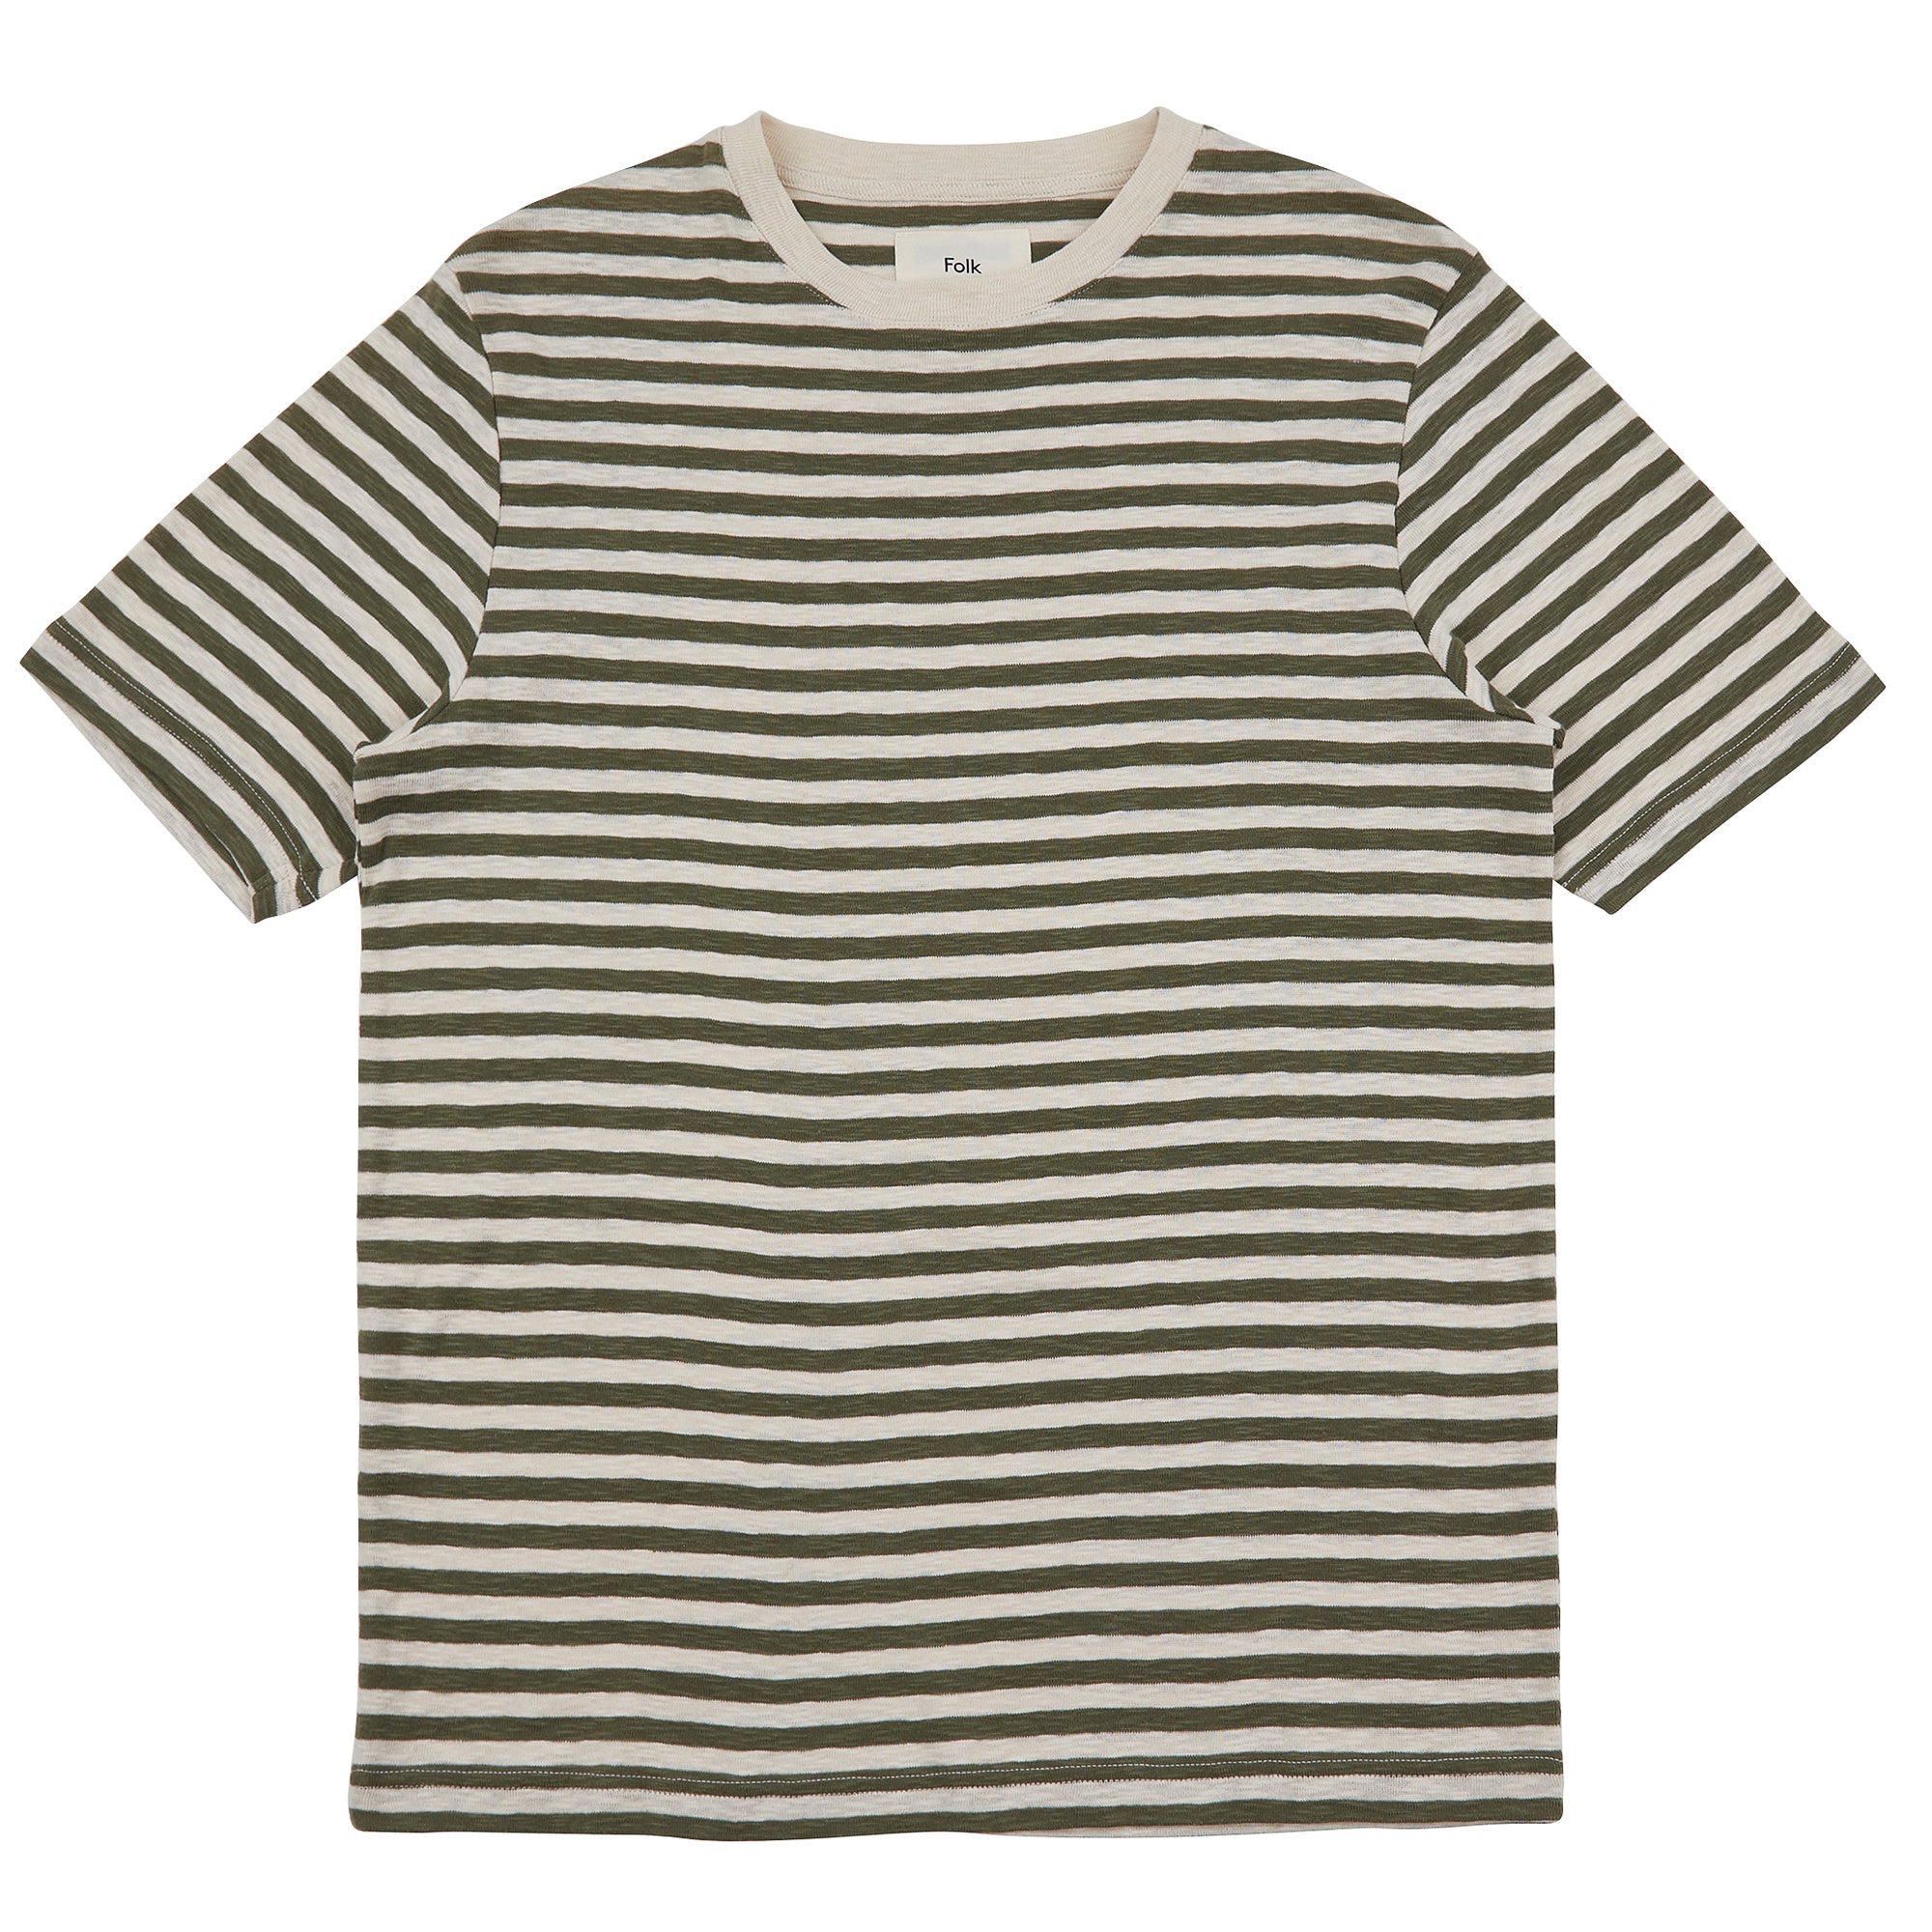 Folk Classic Stripe T-Shirt - Olive / Ecru